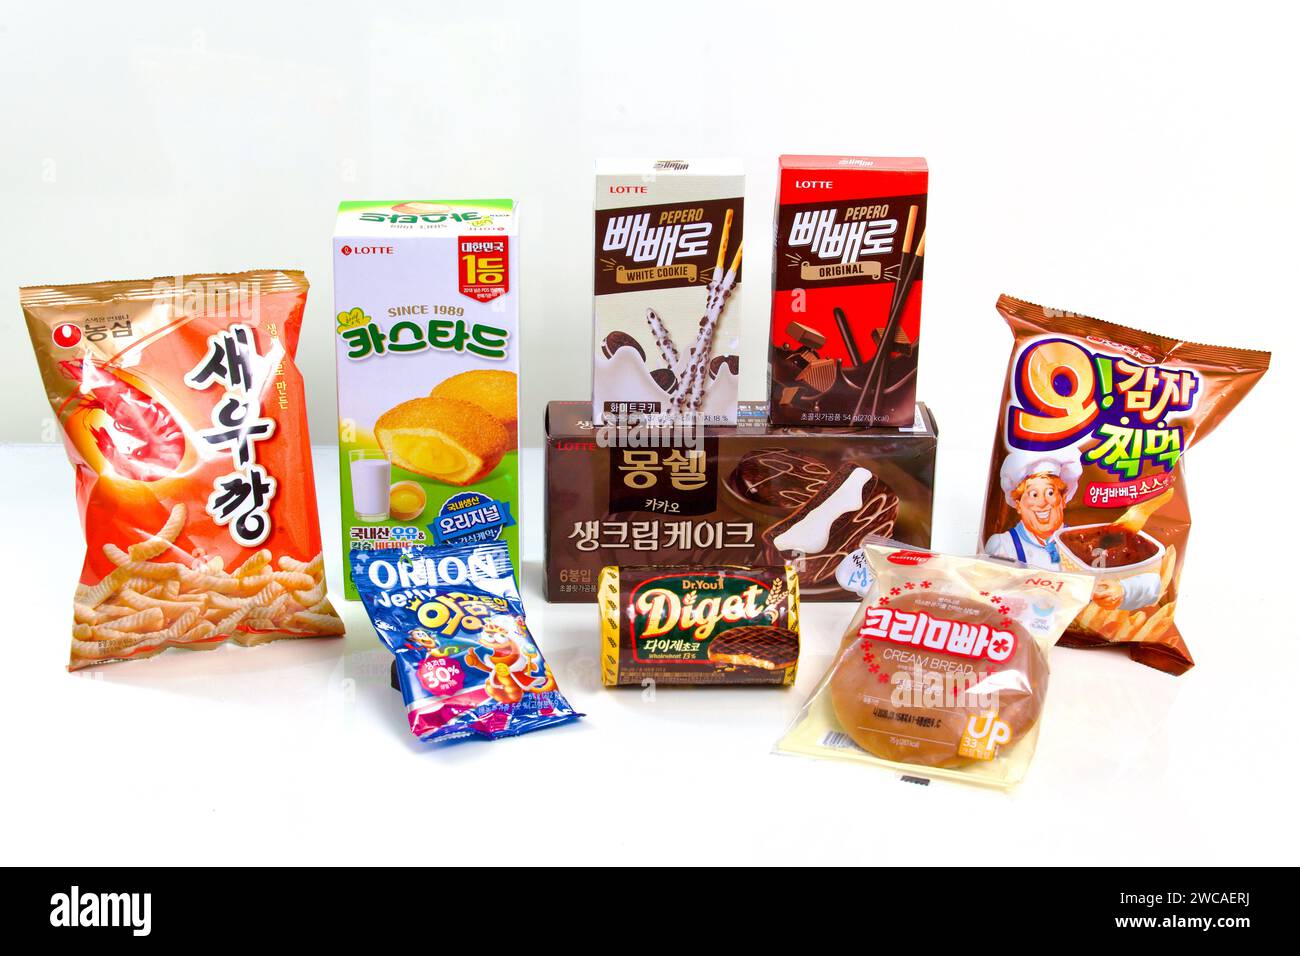 Ulsan, Südkorea - 6. März 2020: Eine Auswahl an koreanischen Snacks, darunter Garnelenchips, Puddingkuchen, Pepero, Choco Pie mit Sahnefüllung, cr Stockfoto